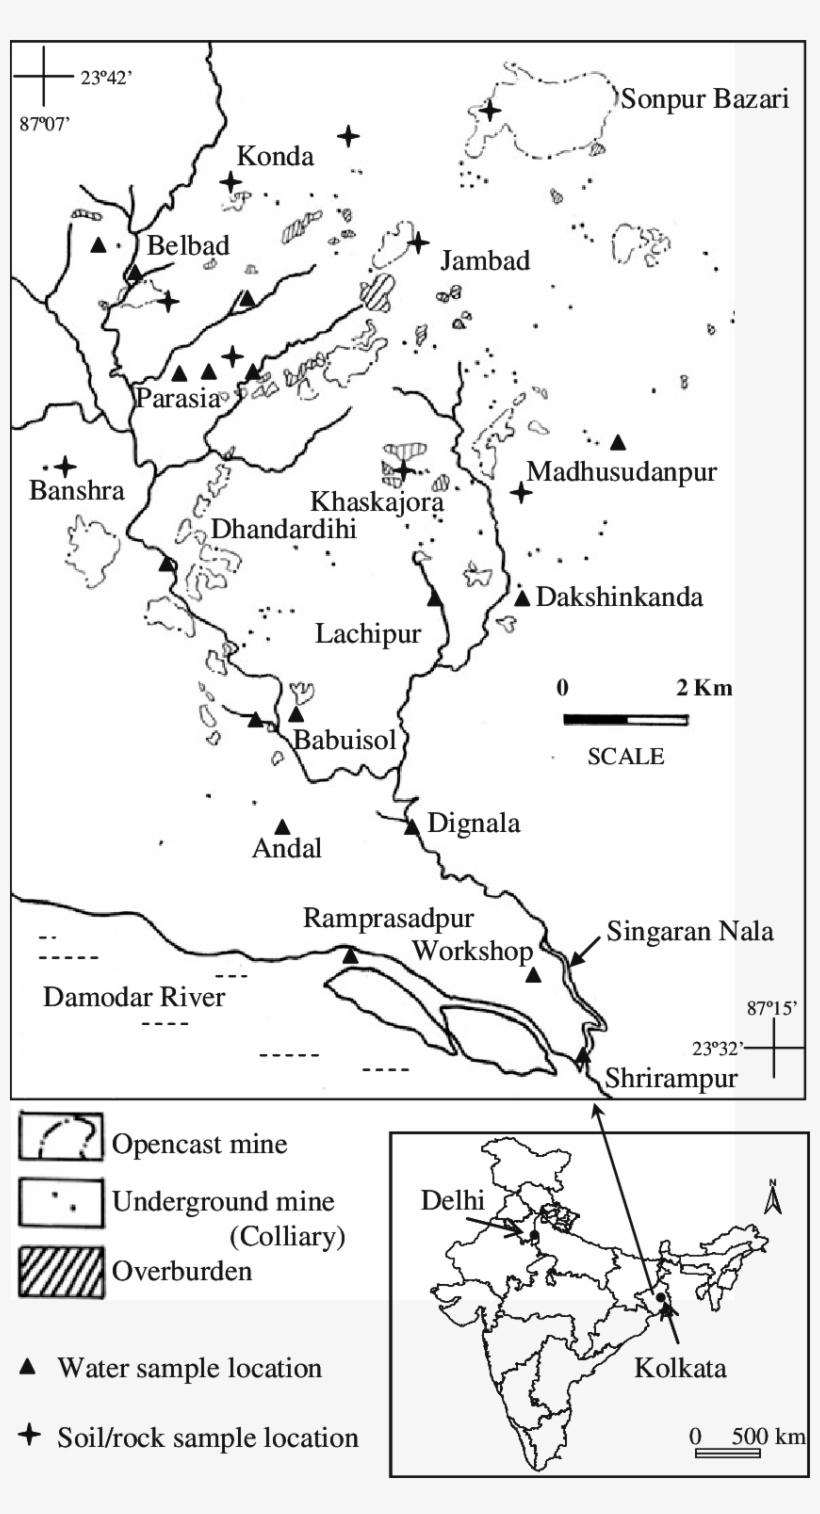 Sampling Location Around Singaran Nala And The Position - Atlas, transparent png #800712